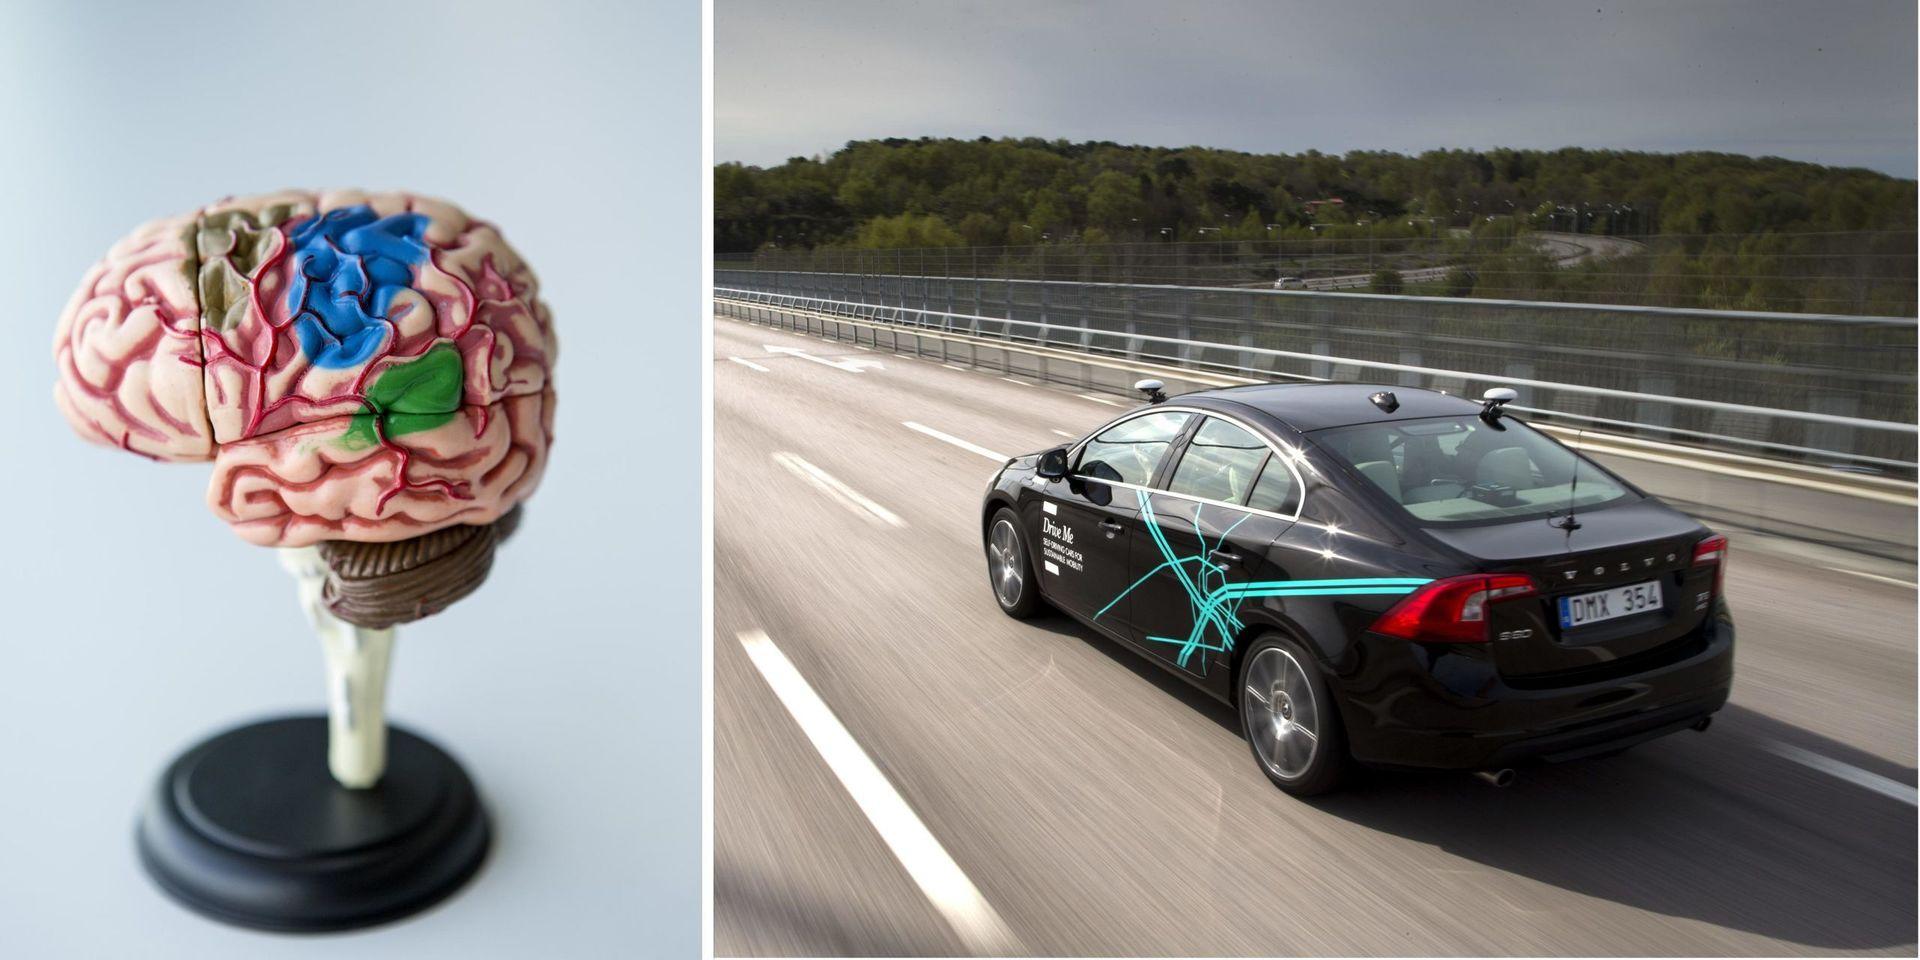 Den mänskliga hjärnans förmåga att uppfatta saker i omgivningen – perceptionen – har utvecklats under hela evolutionen – smarta bilar har några år på sig att göra samma sak.